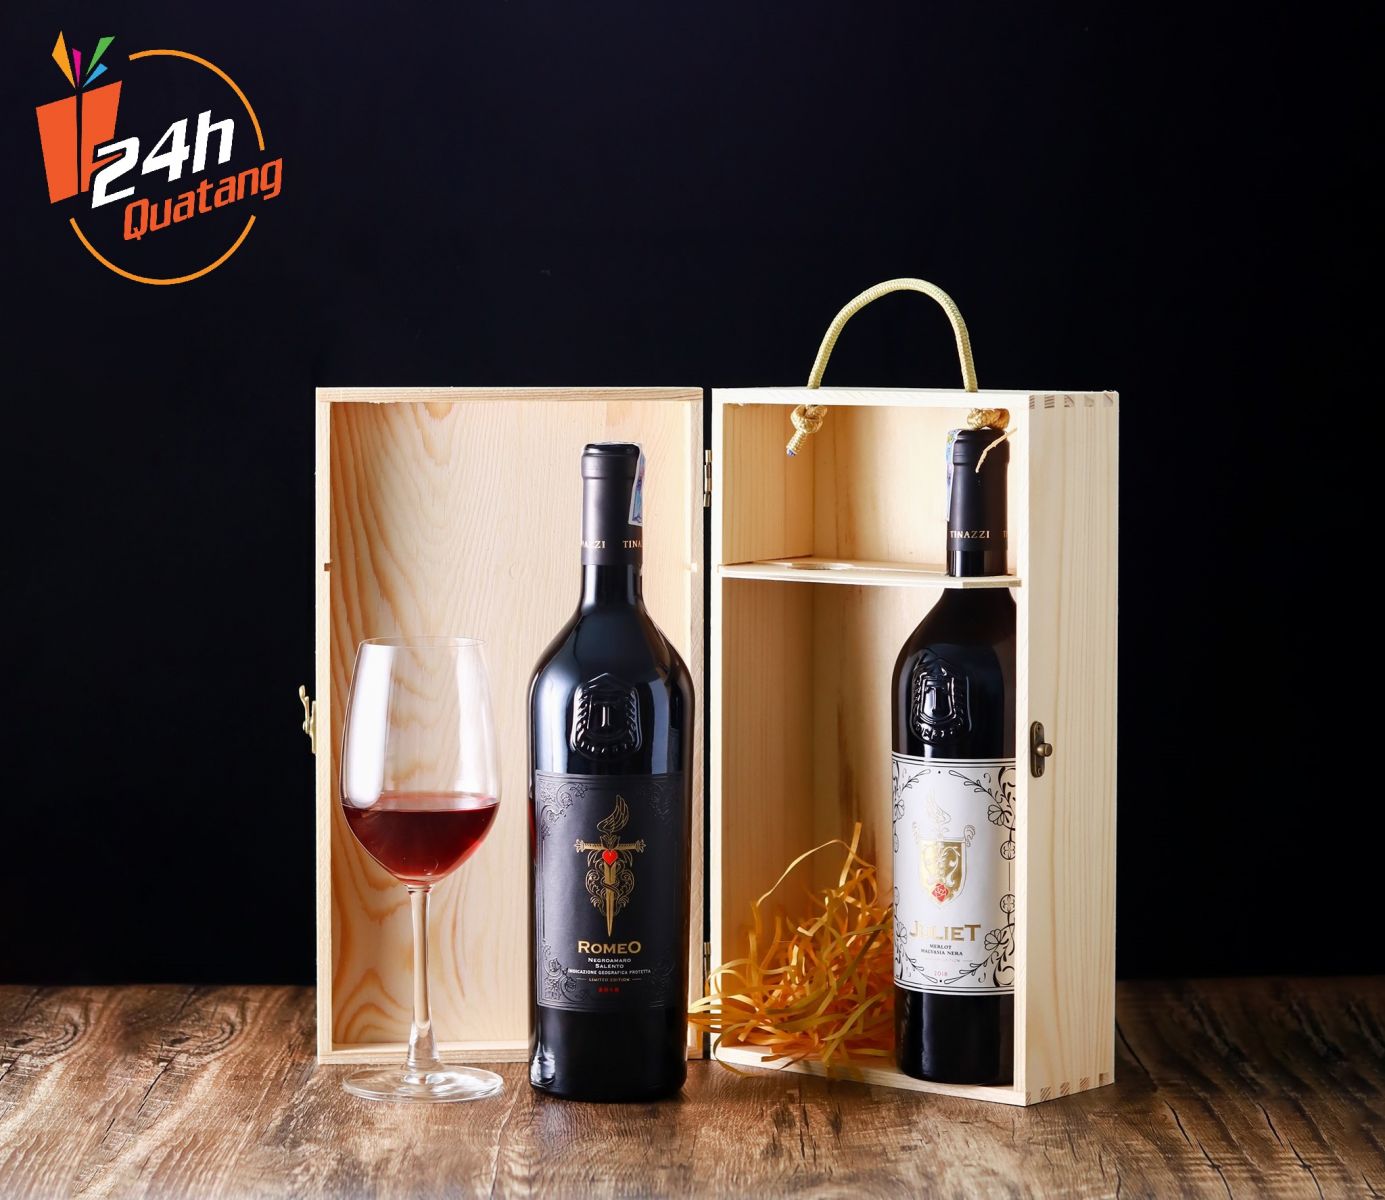 Rượu vang Ý Quatang24h.com.vn